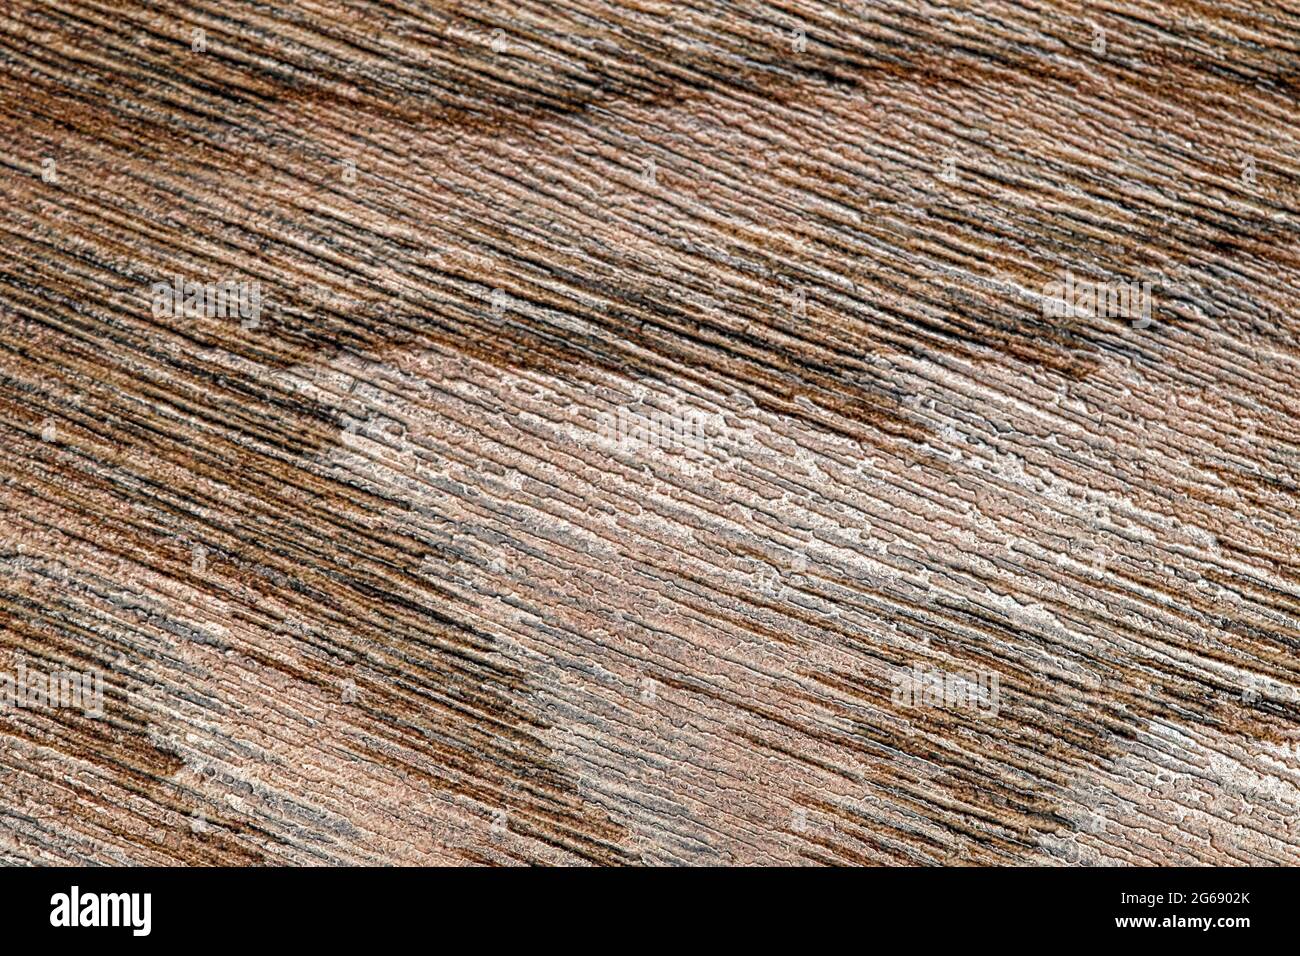 Texture of brown beige wooden floor with a fine grain Stock Photo